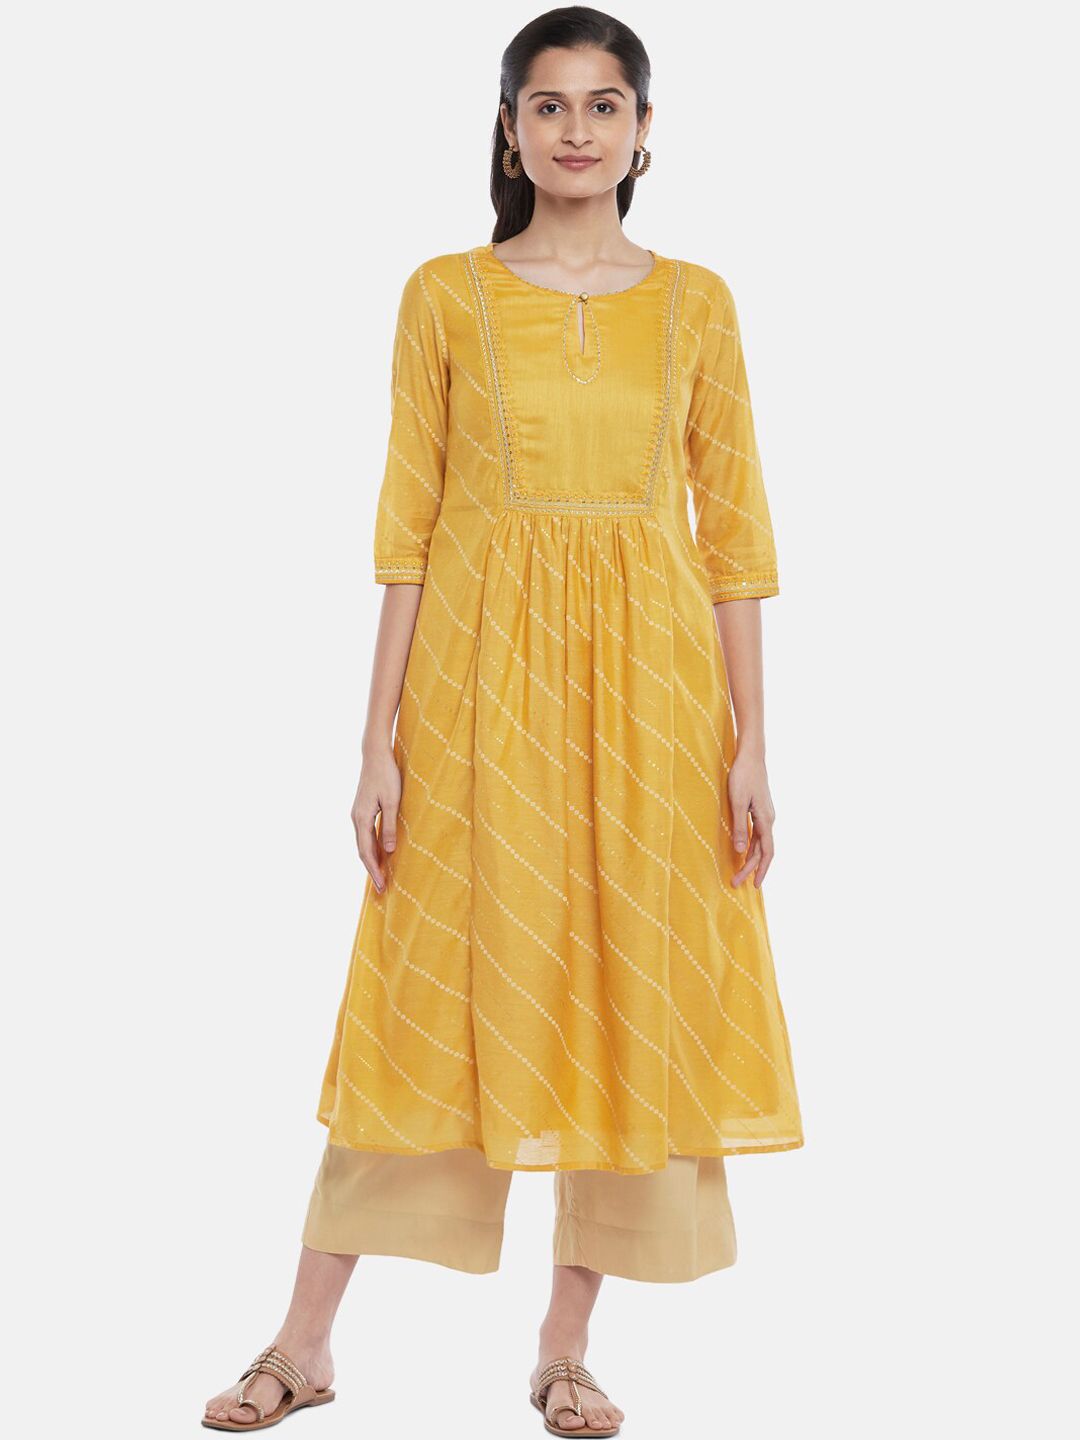 RANGMANCH BY PANTALOONS Women Mustard Yellow Ethnic Motifs Anarkali Kurta Price in India